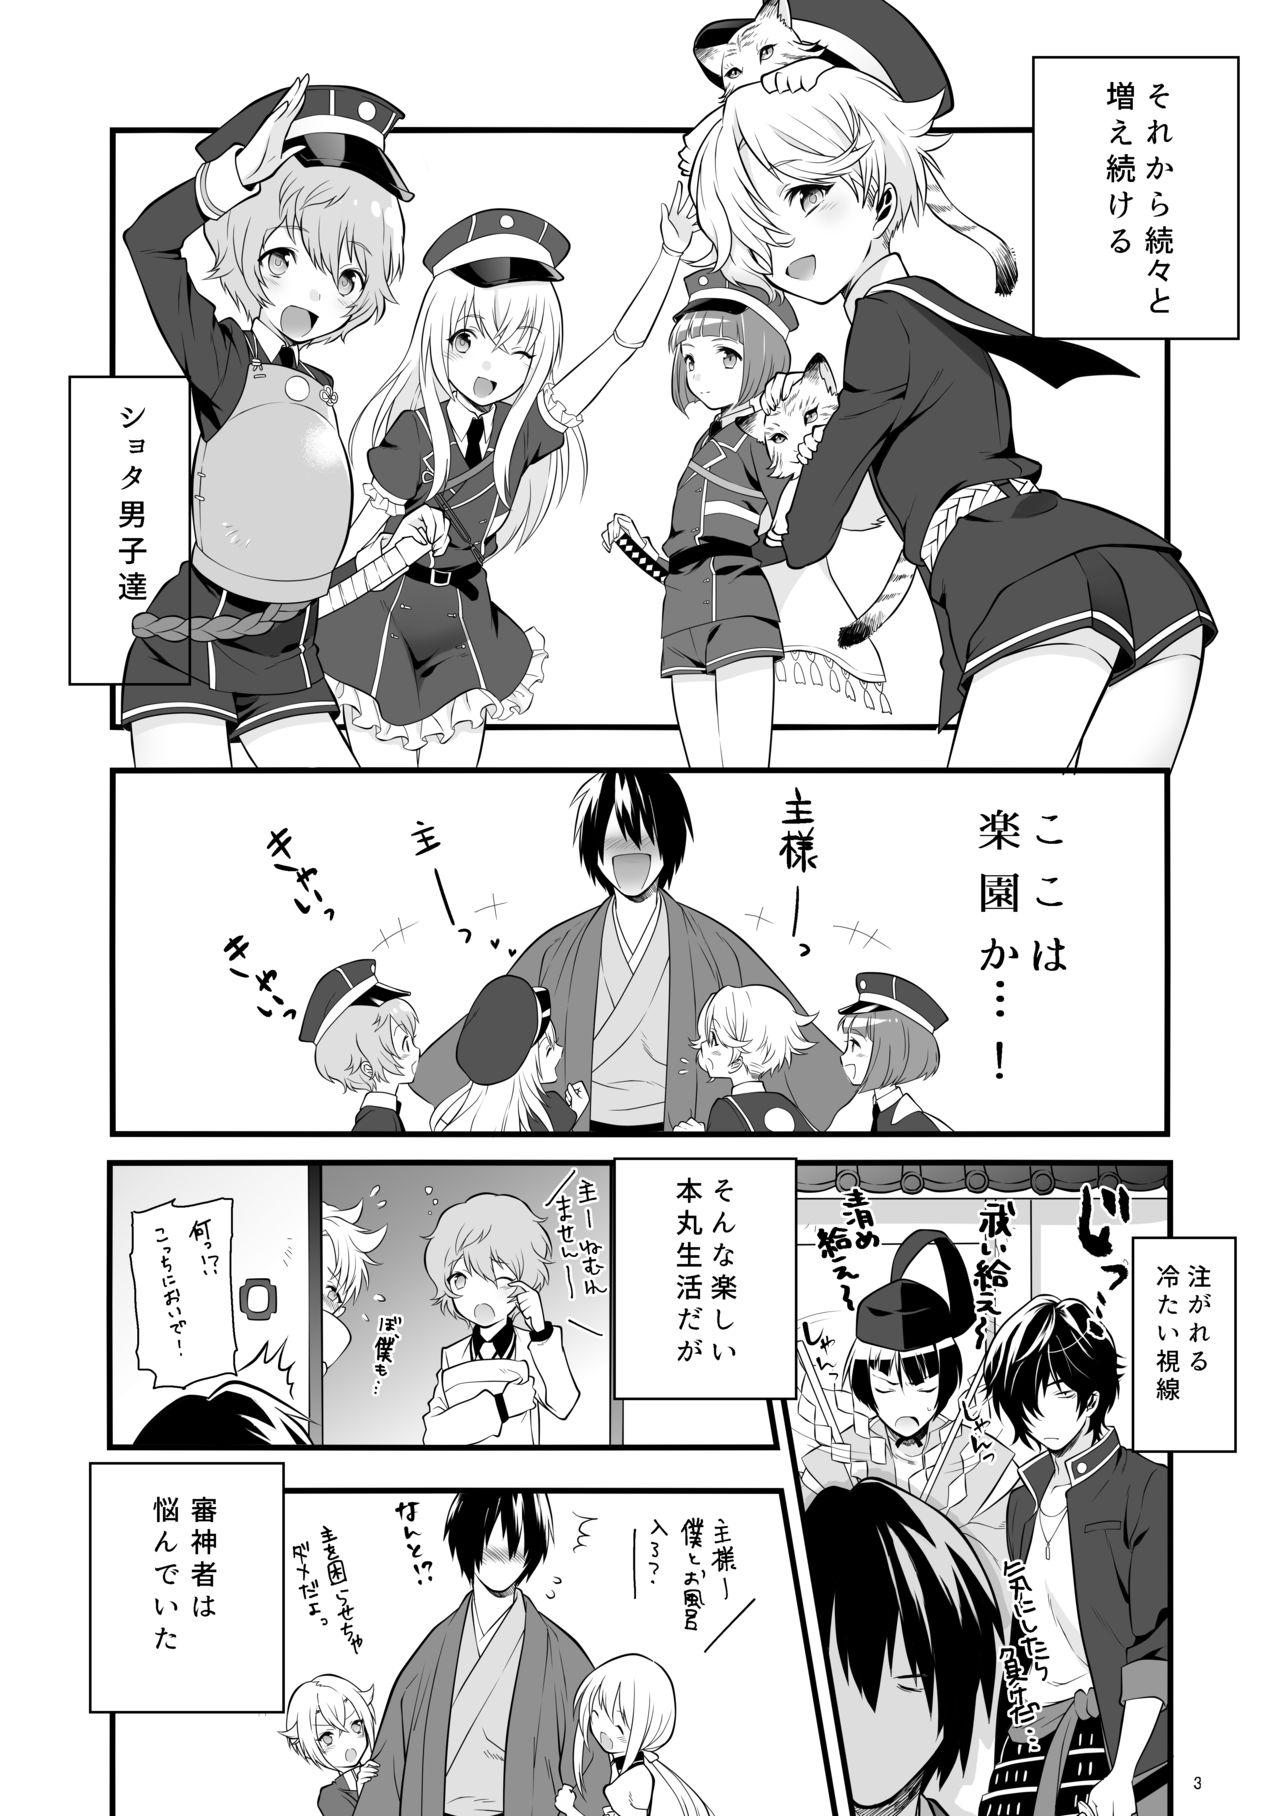 Cavalgando Hajimete no Hotarumaru - Touken ranbu White Chick - Page 6